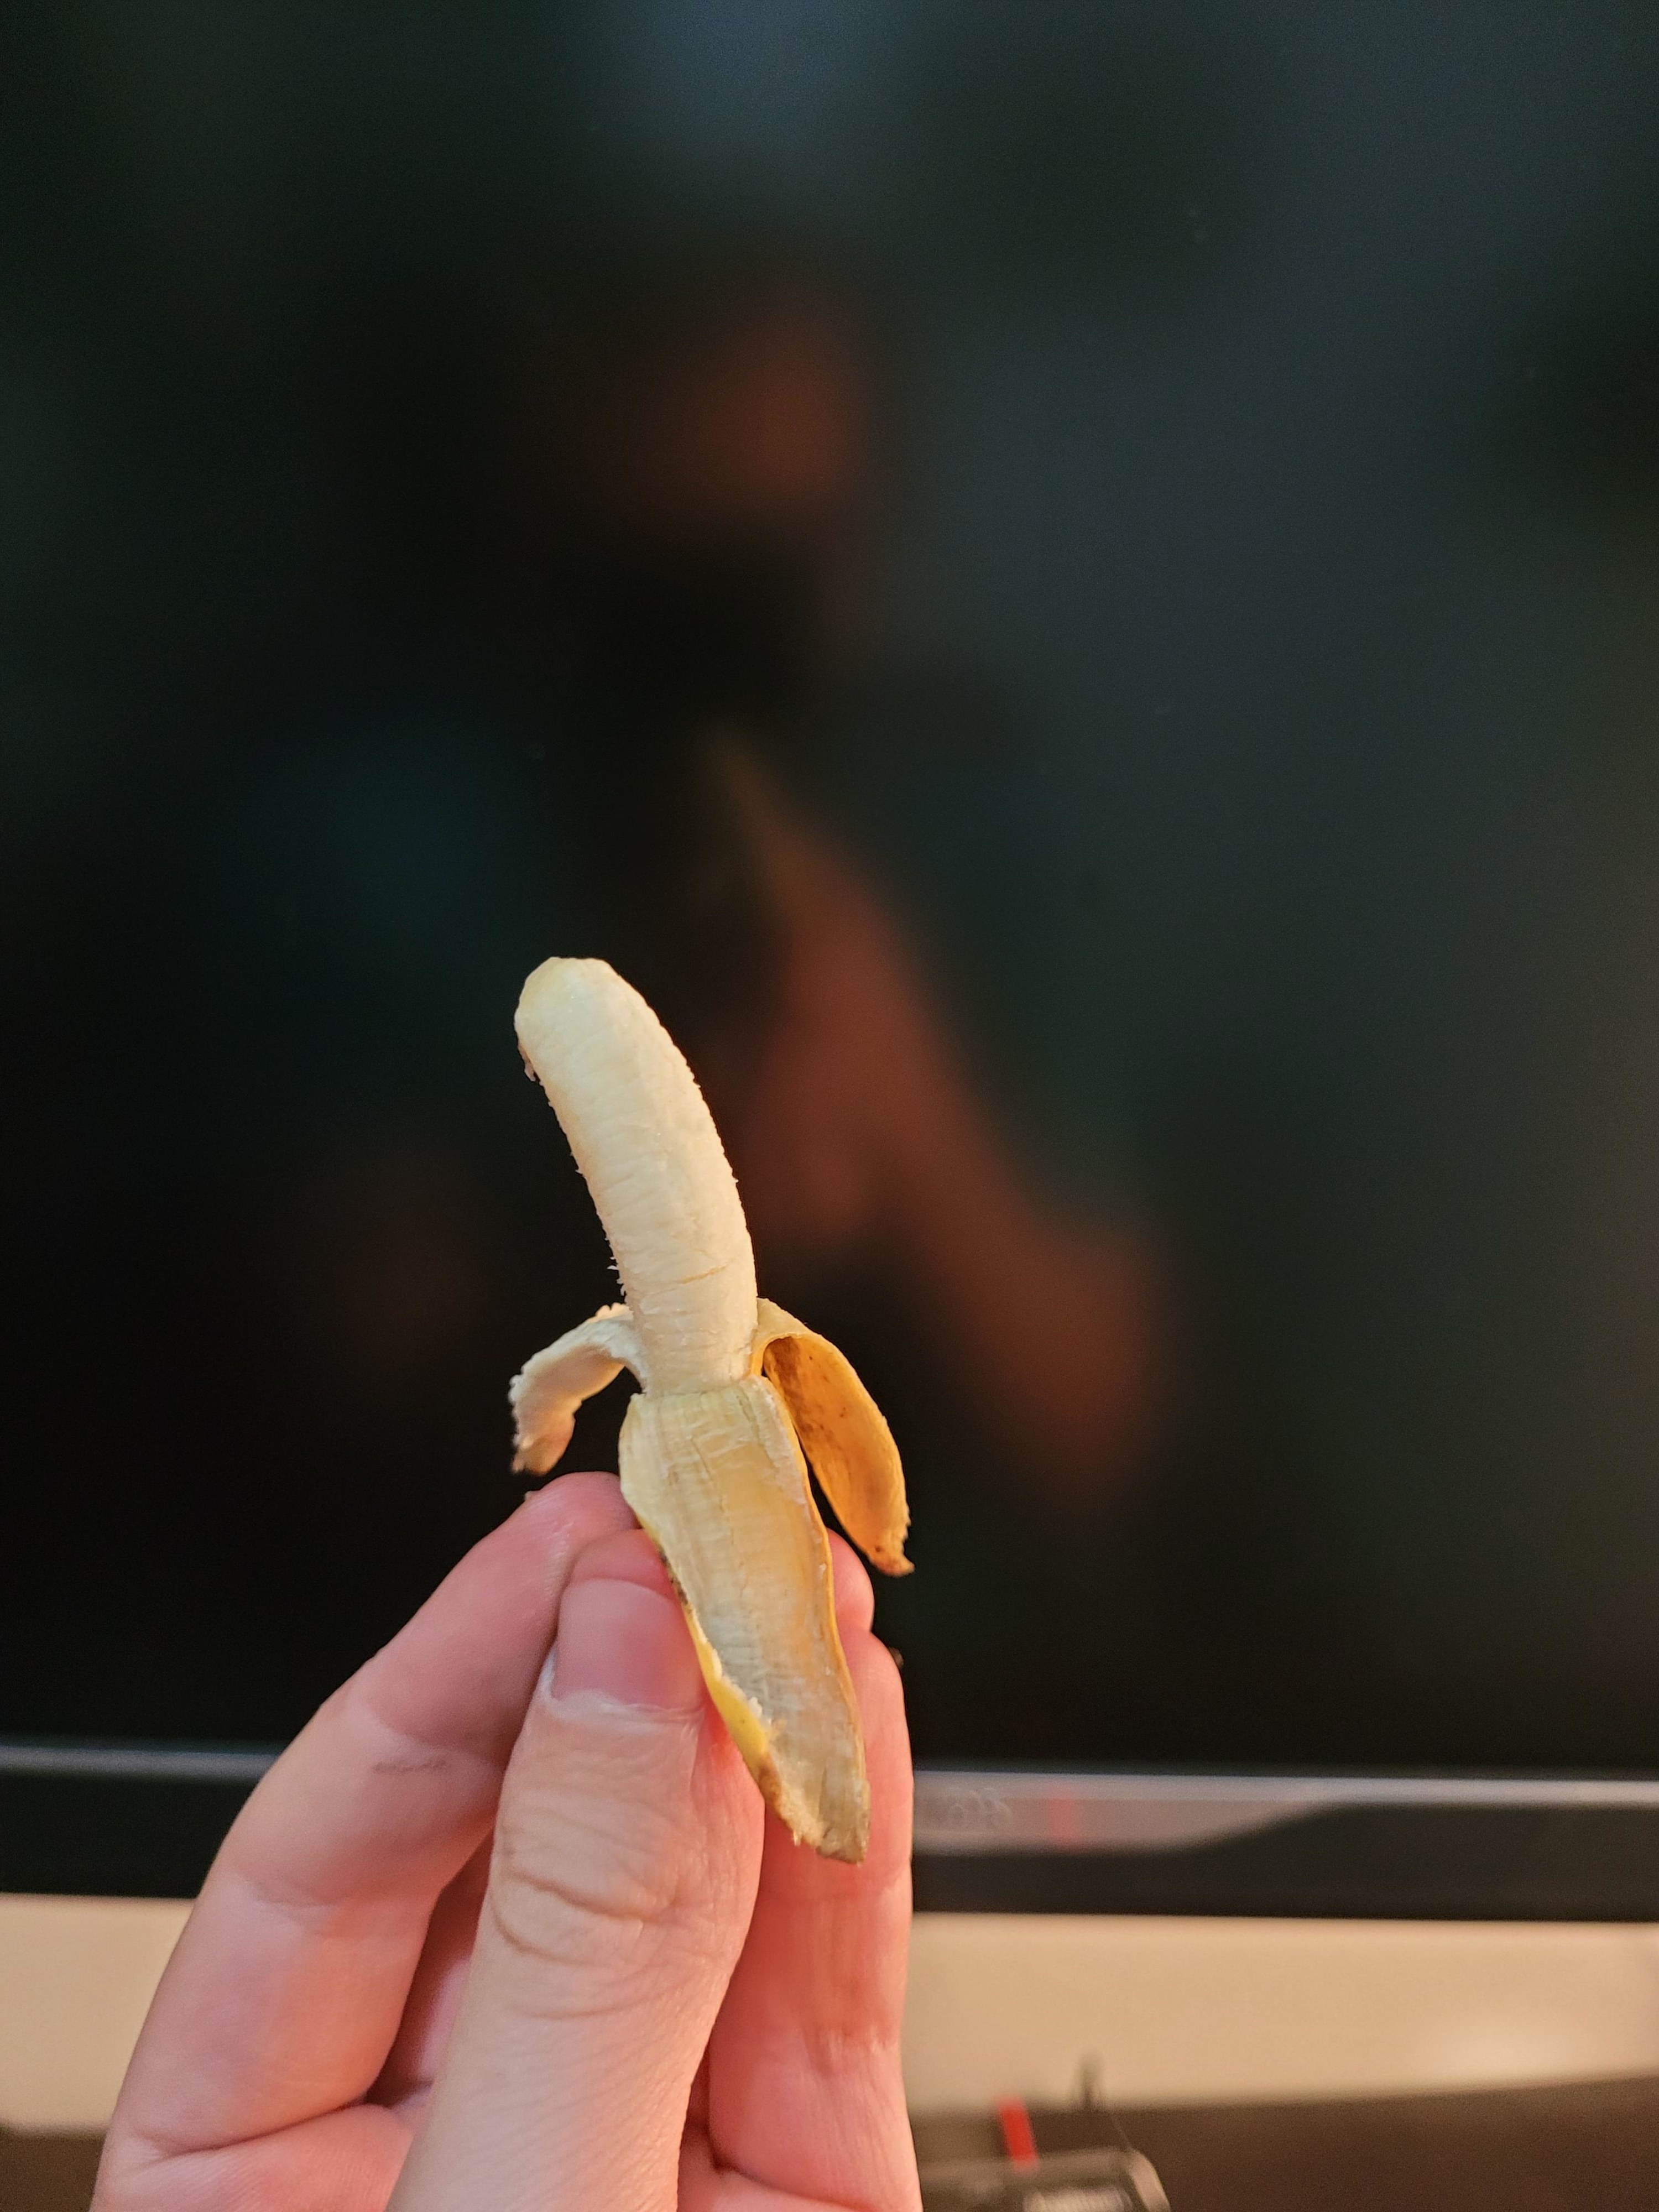 A hand holding a tiny banana